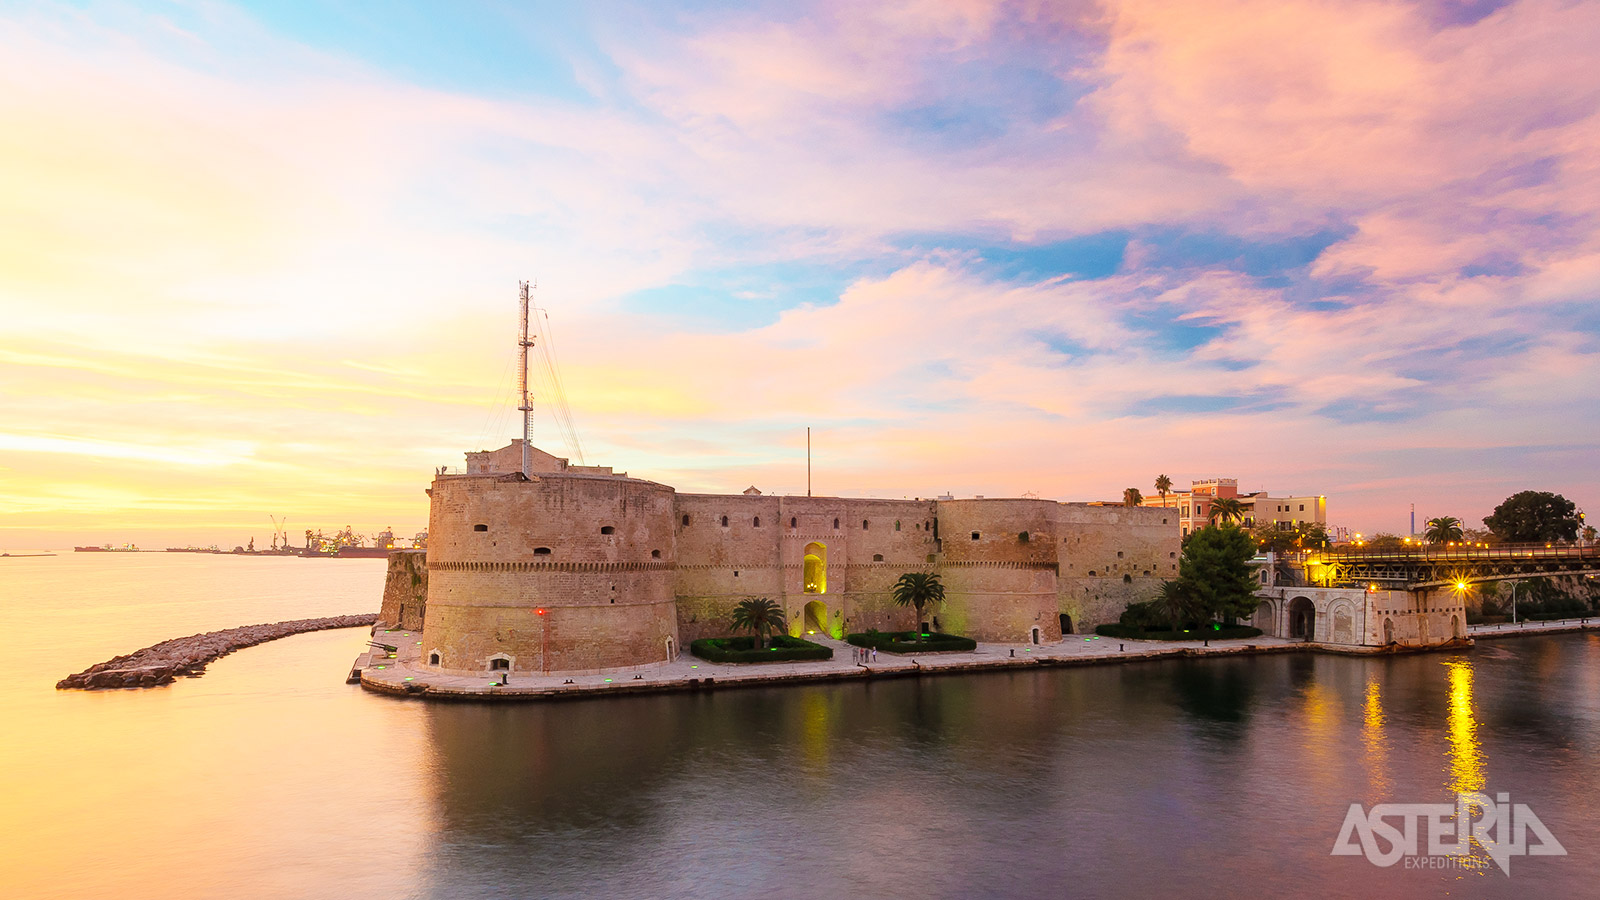 Het kasteel van Taranto (Castel Sant’Angelo) werd gebouwd op de restanten van een Normandisch fort